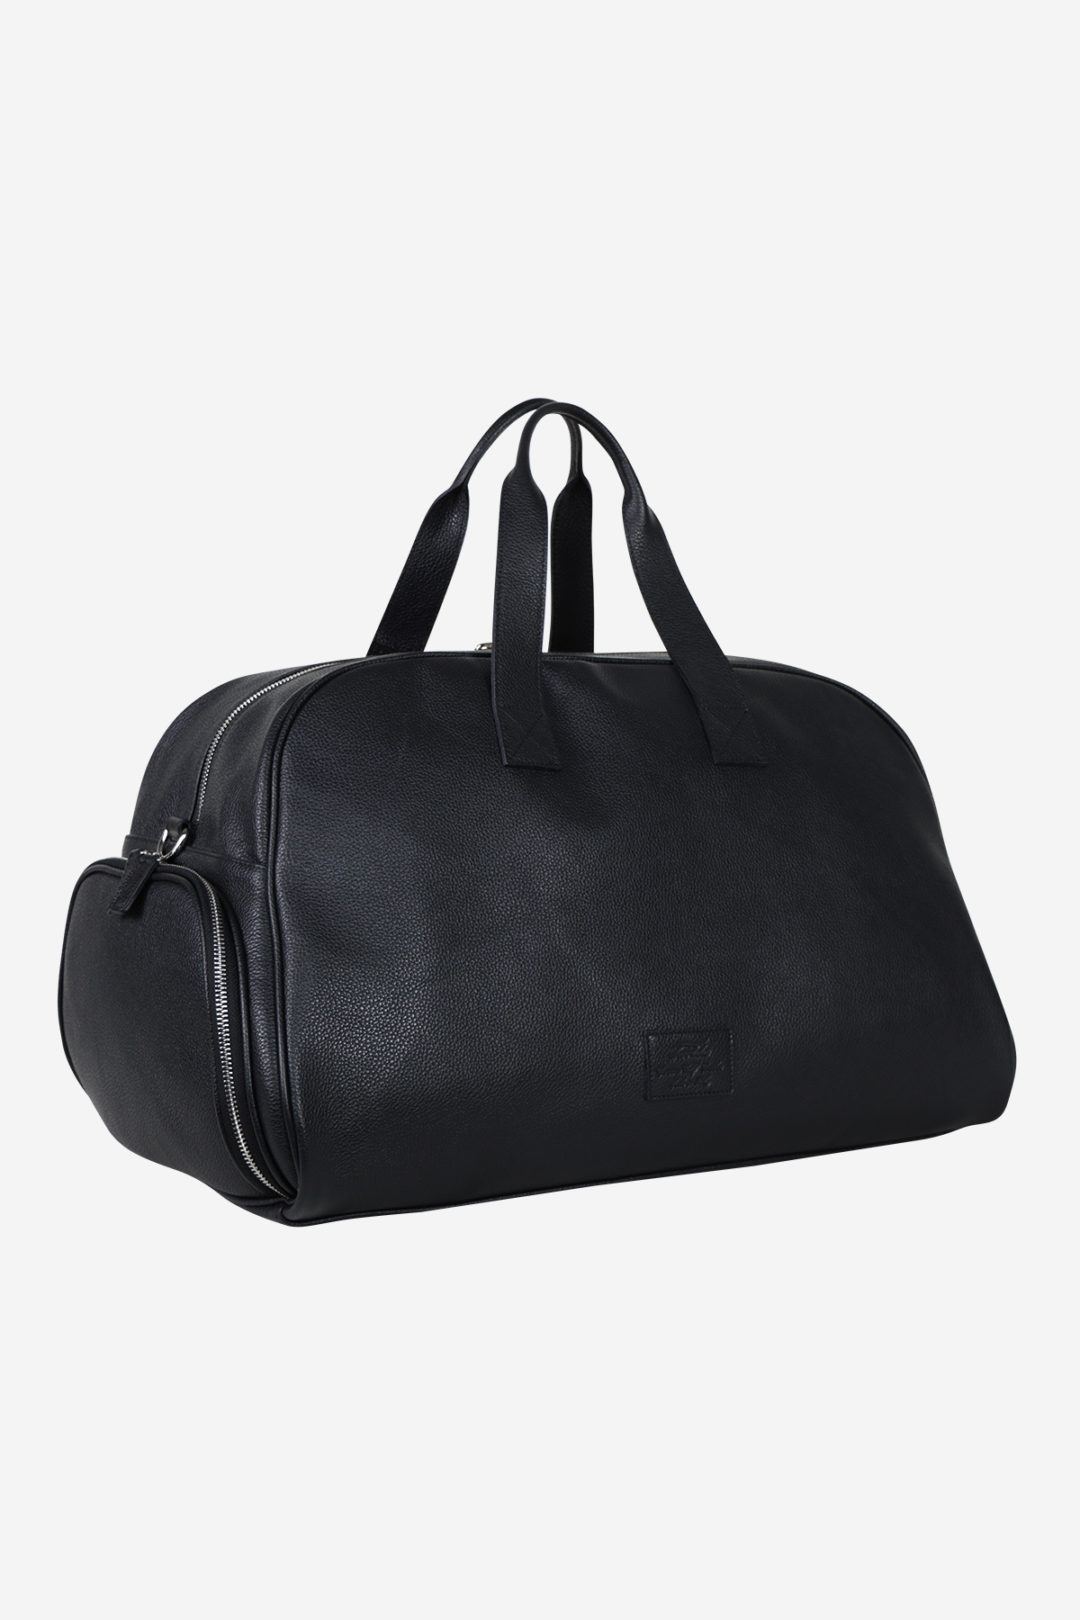 Original Sport Bag black leather waterproof